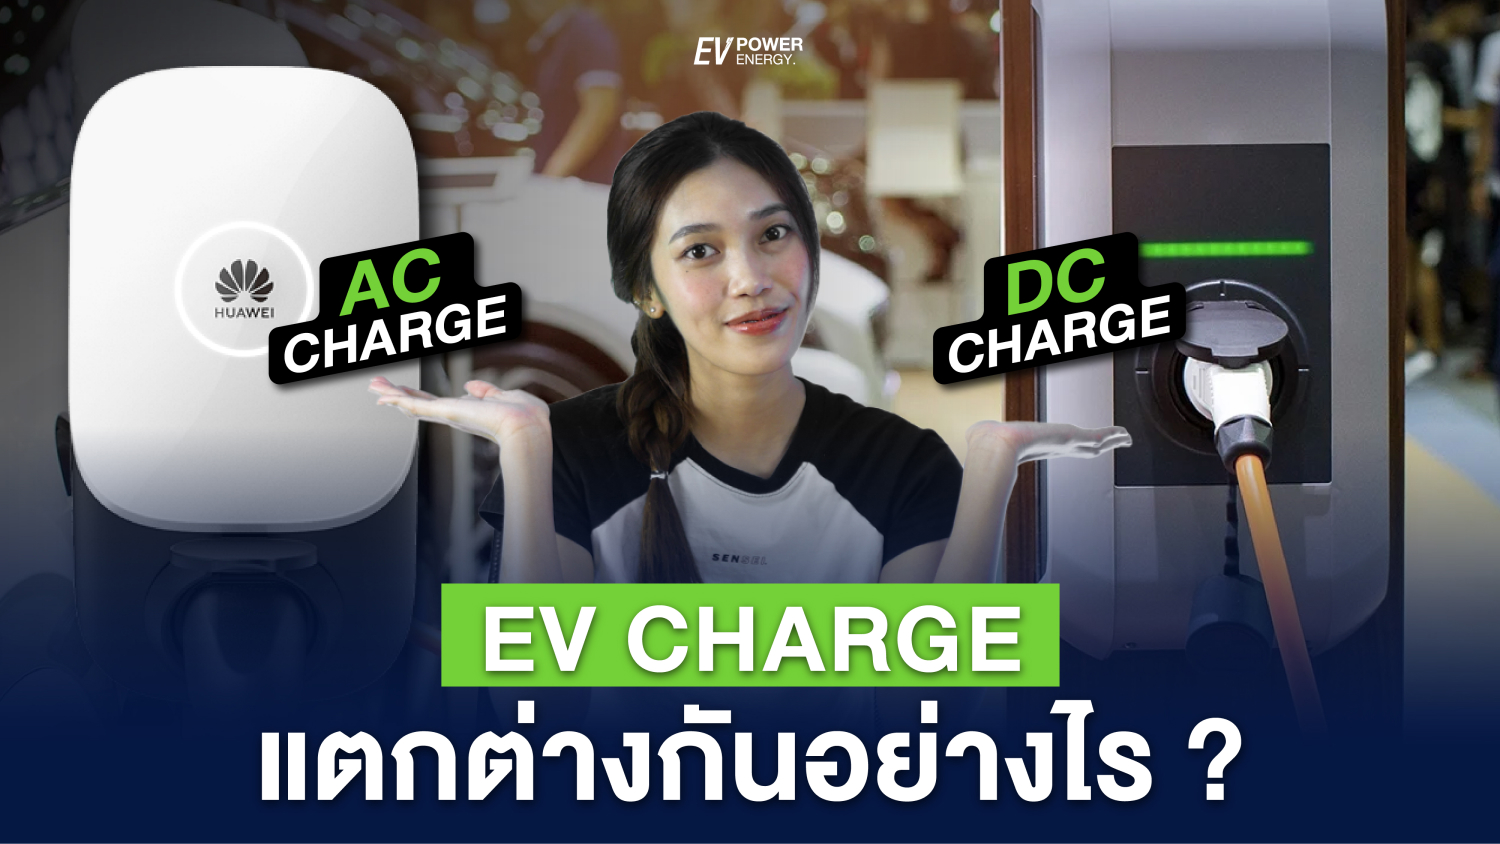 EV Charge แต่ละแบบ แตกต่างกันอย่างไร